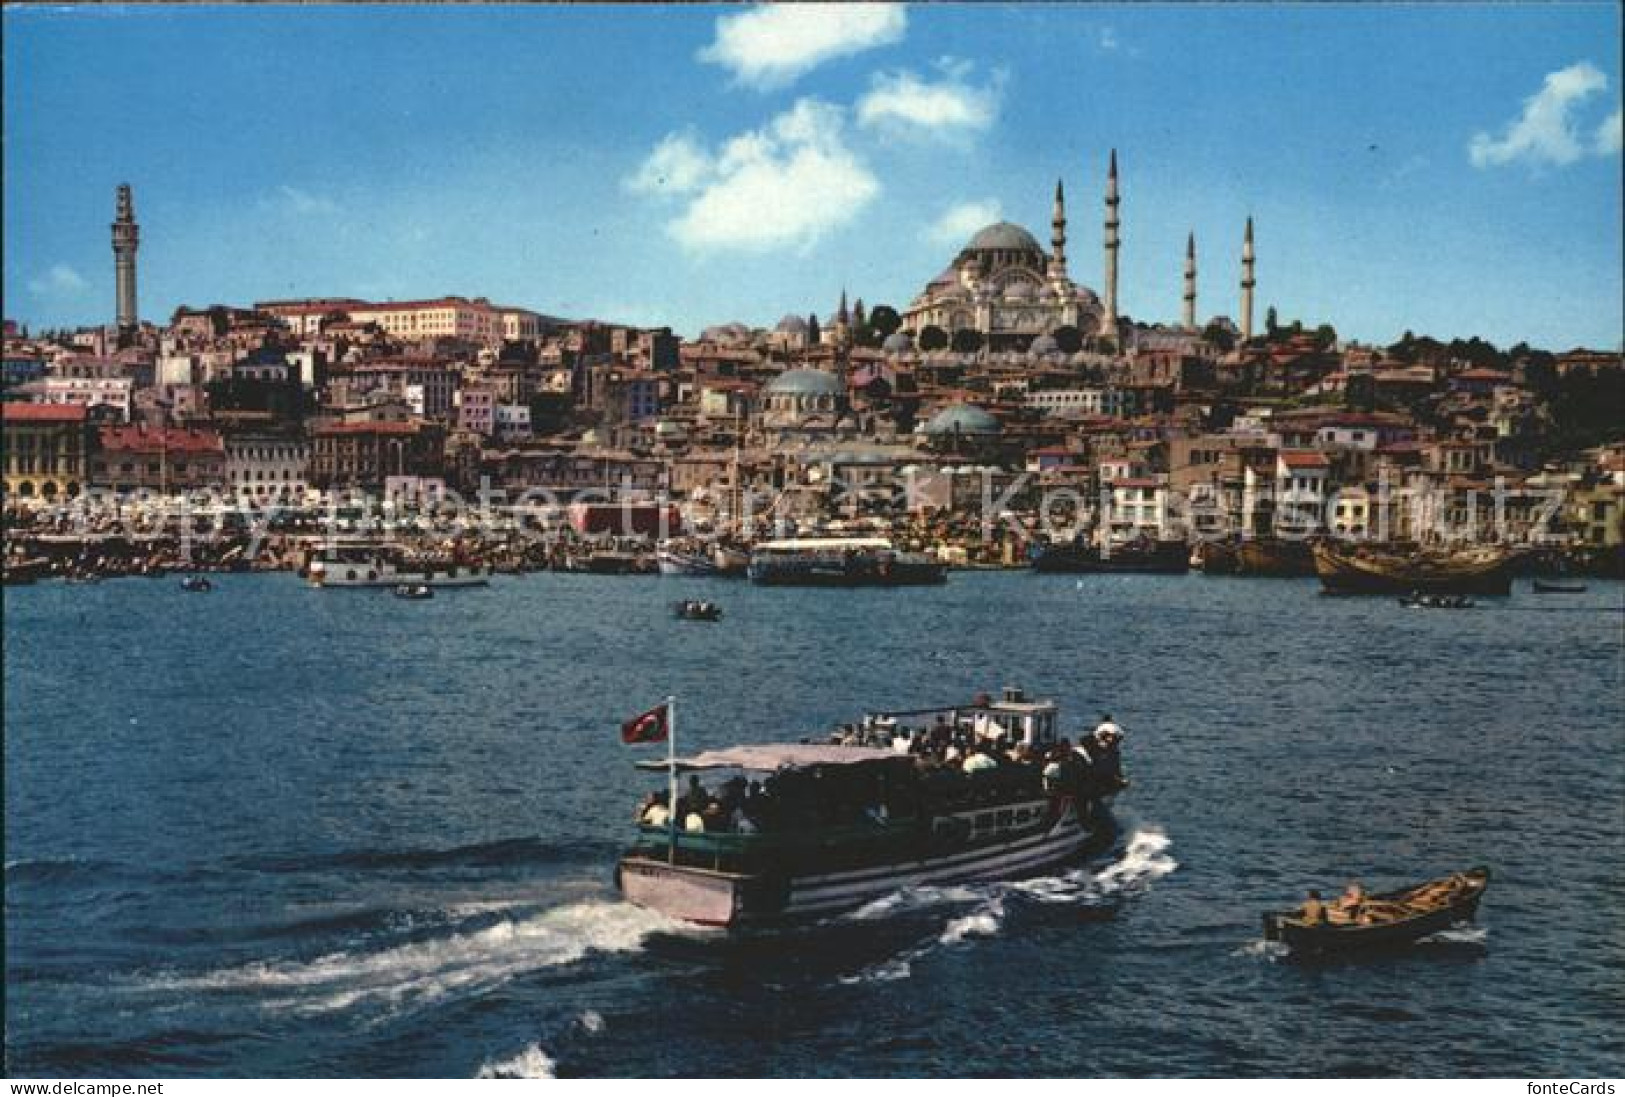 71962055 Istanbul Constantinopel Golden Horn An Mosque Of Soliman  - Turquie